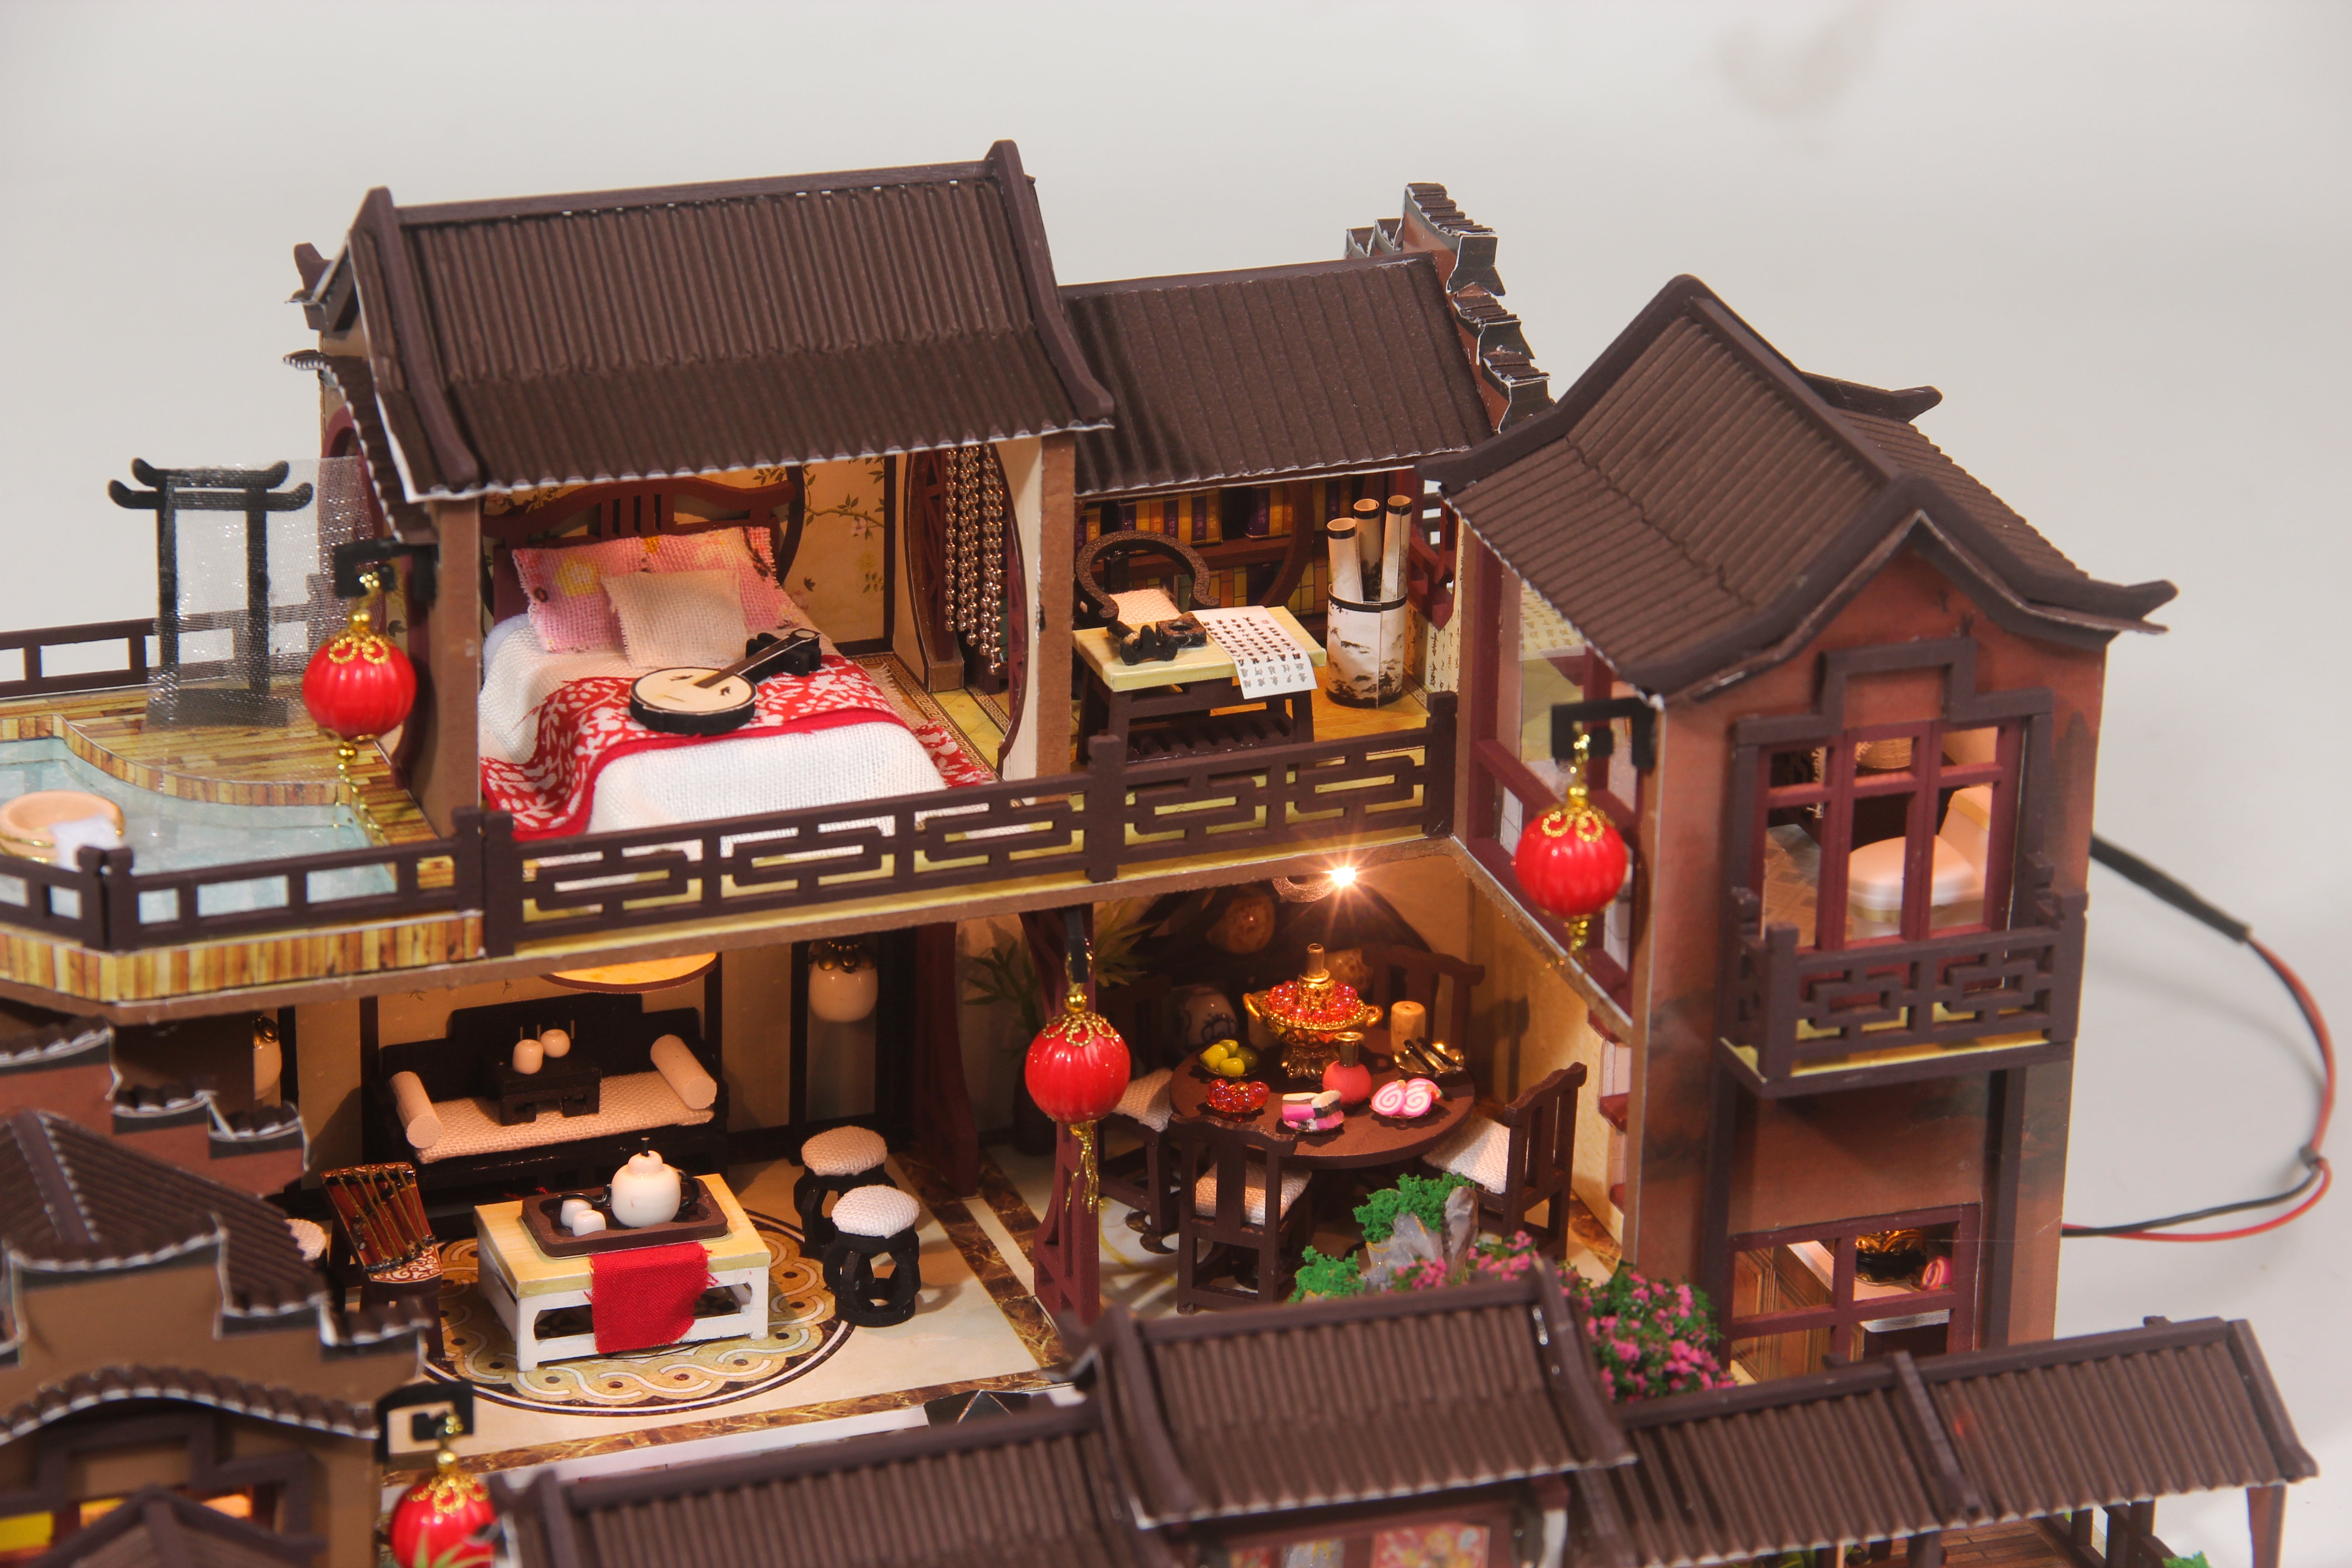 中国古屋 DIY 木制娃娃屋套件带家具 | 生日礼物 |爱好